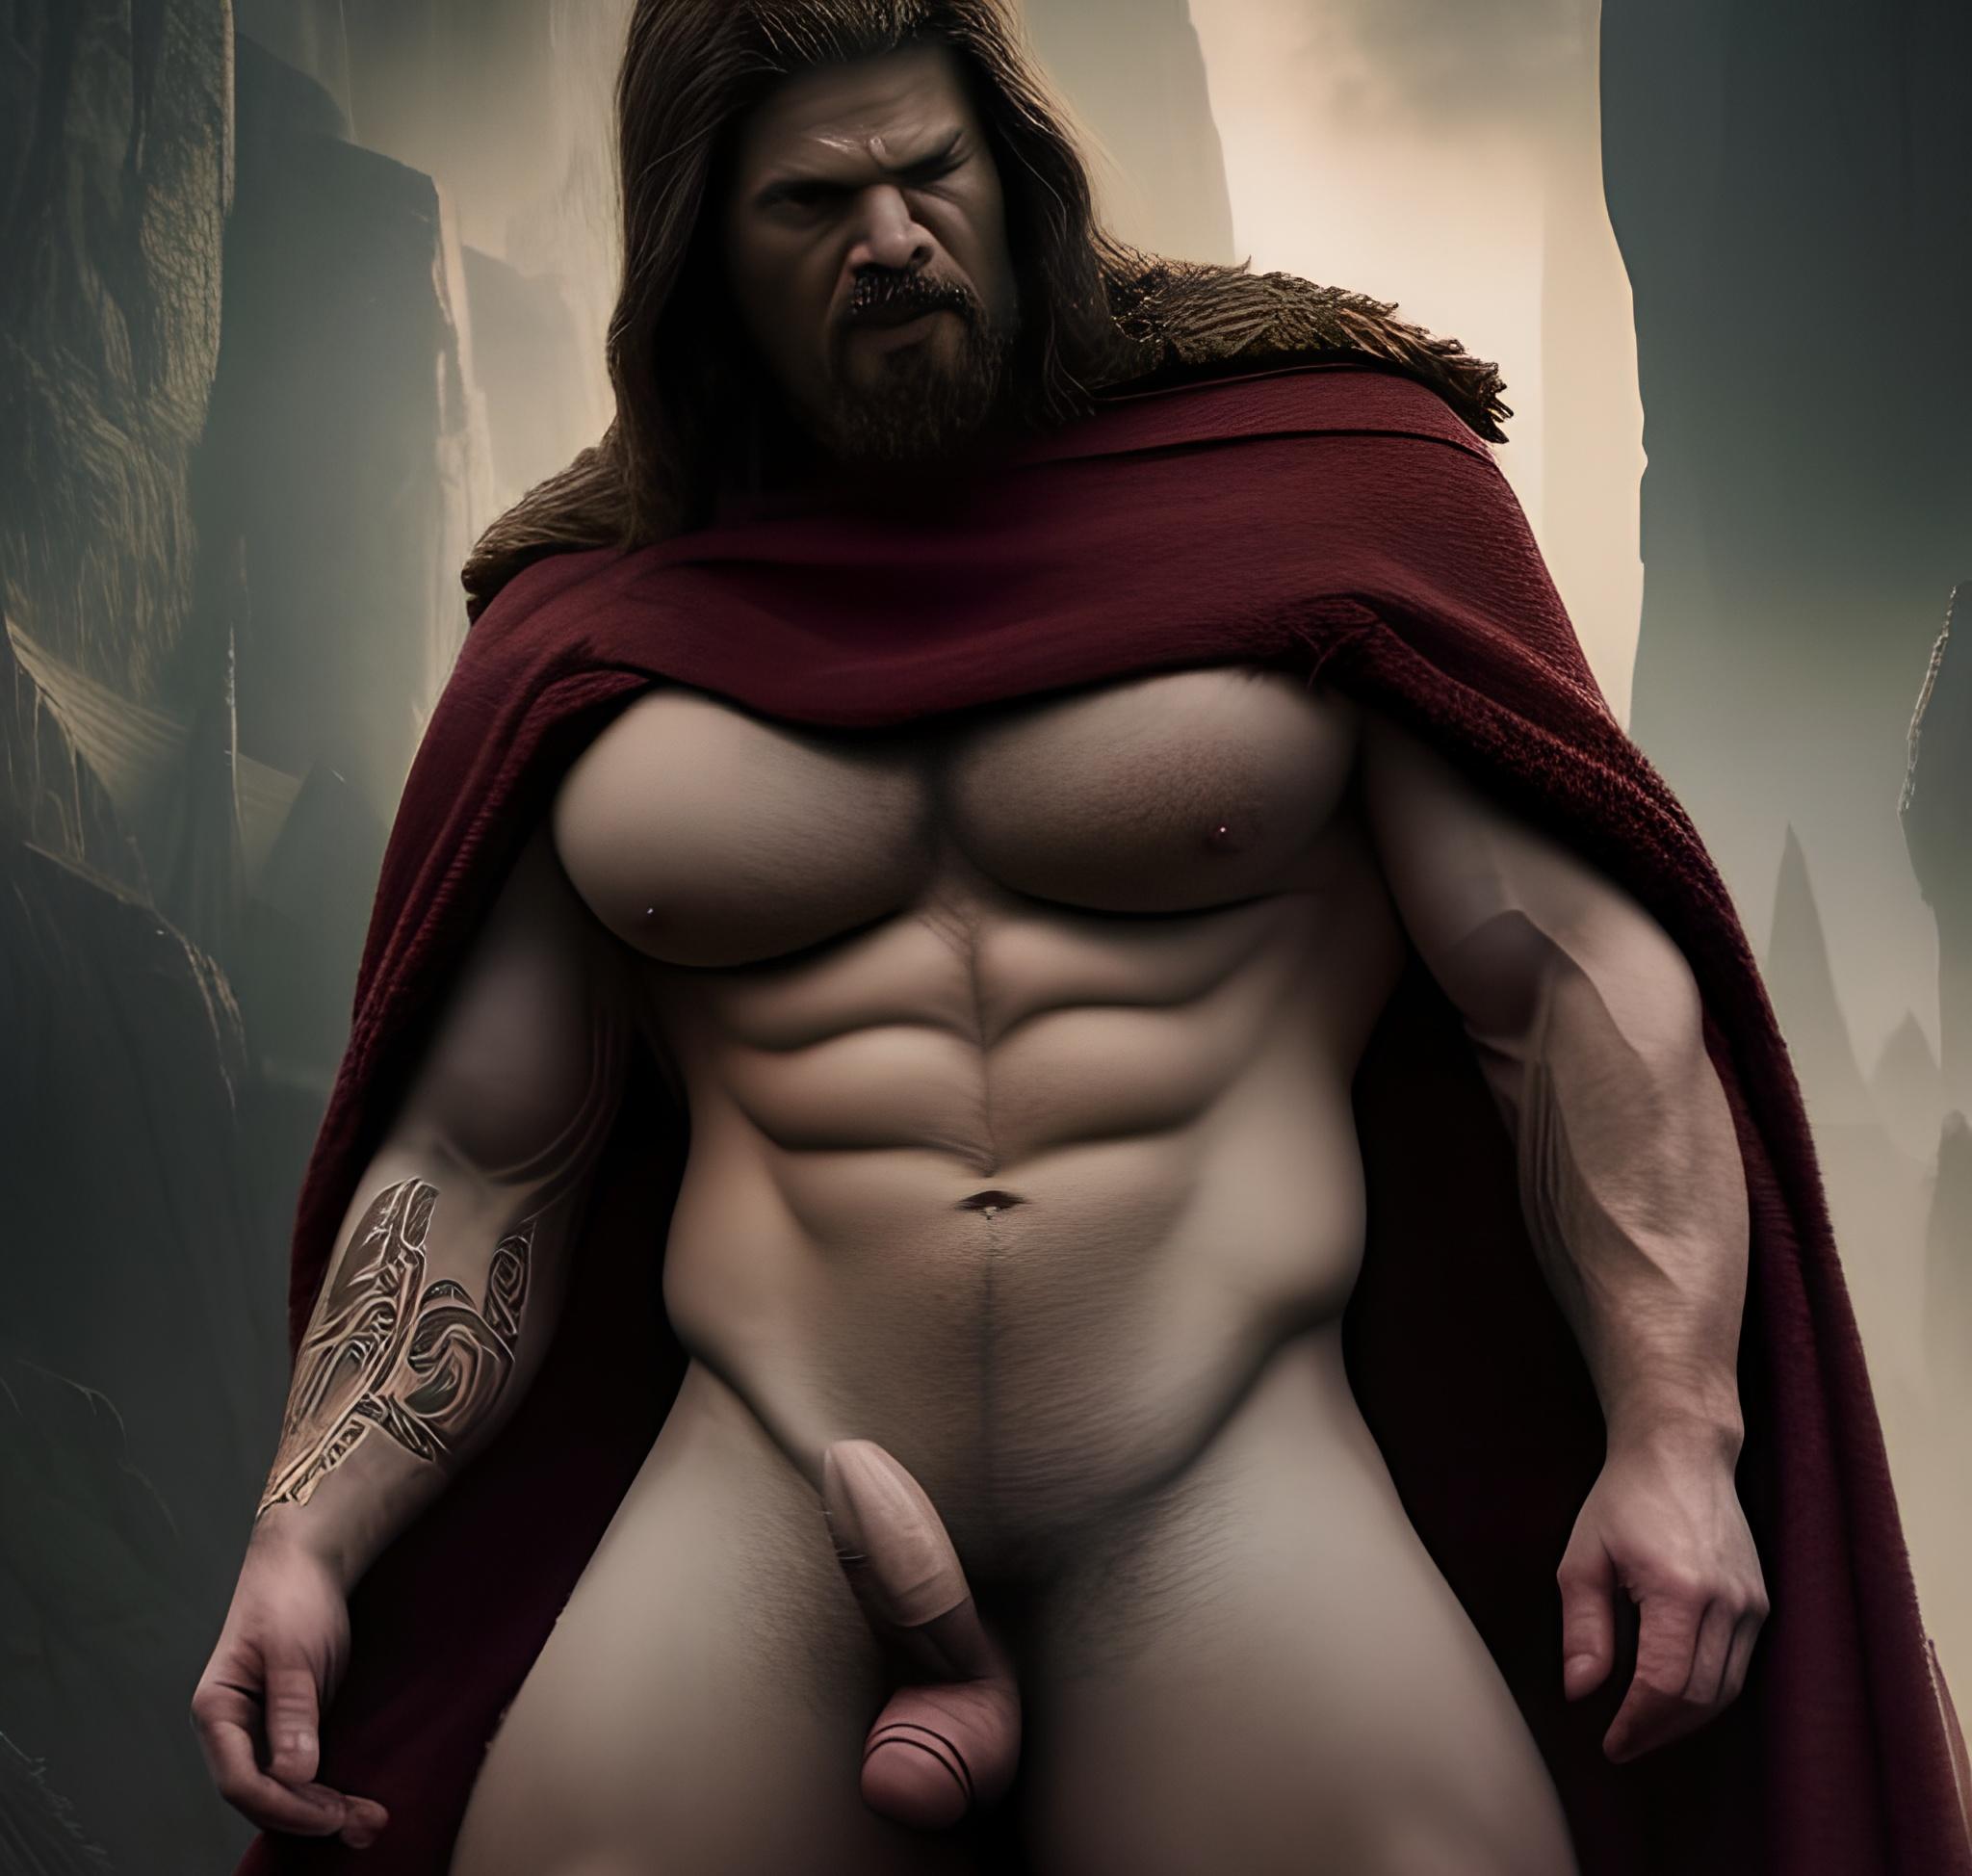 La grosse bite épaisse dressée dun bodybuilder viking de 30 ans dans les montagnes Dark image